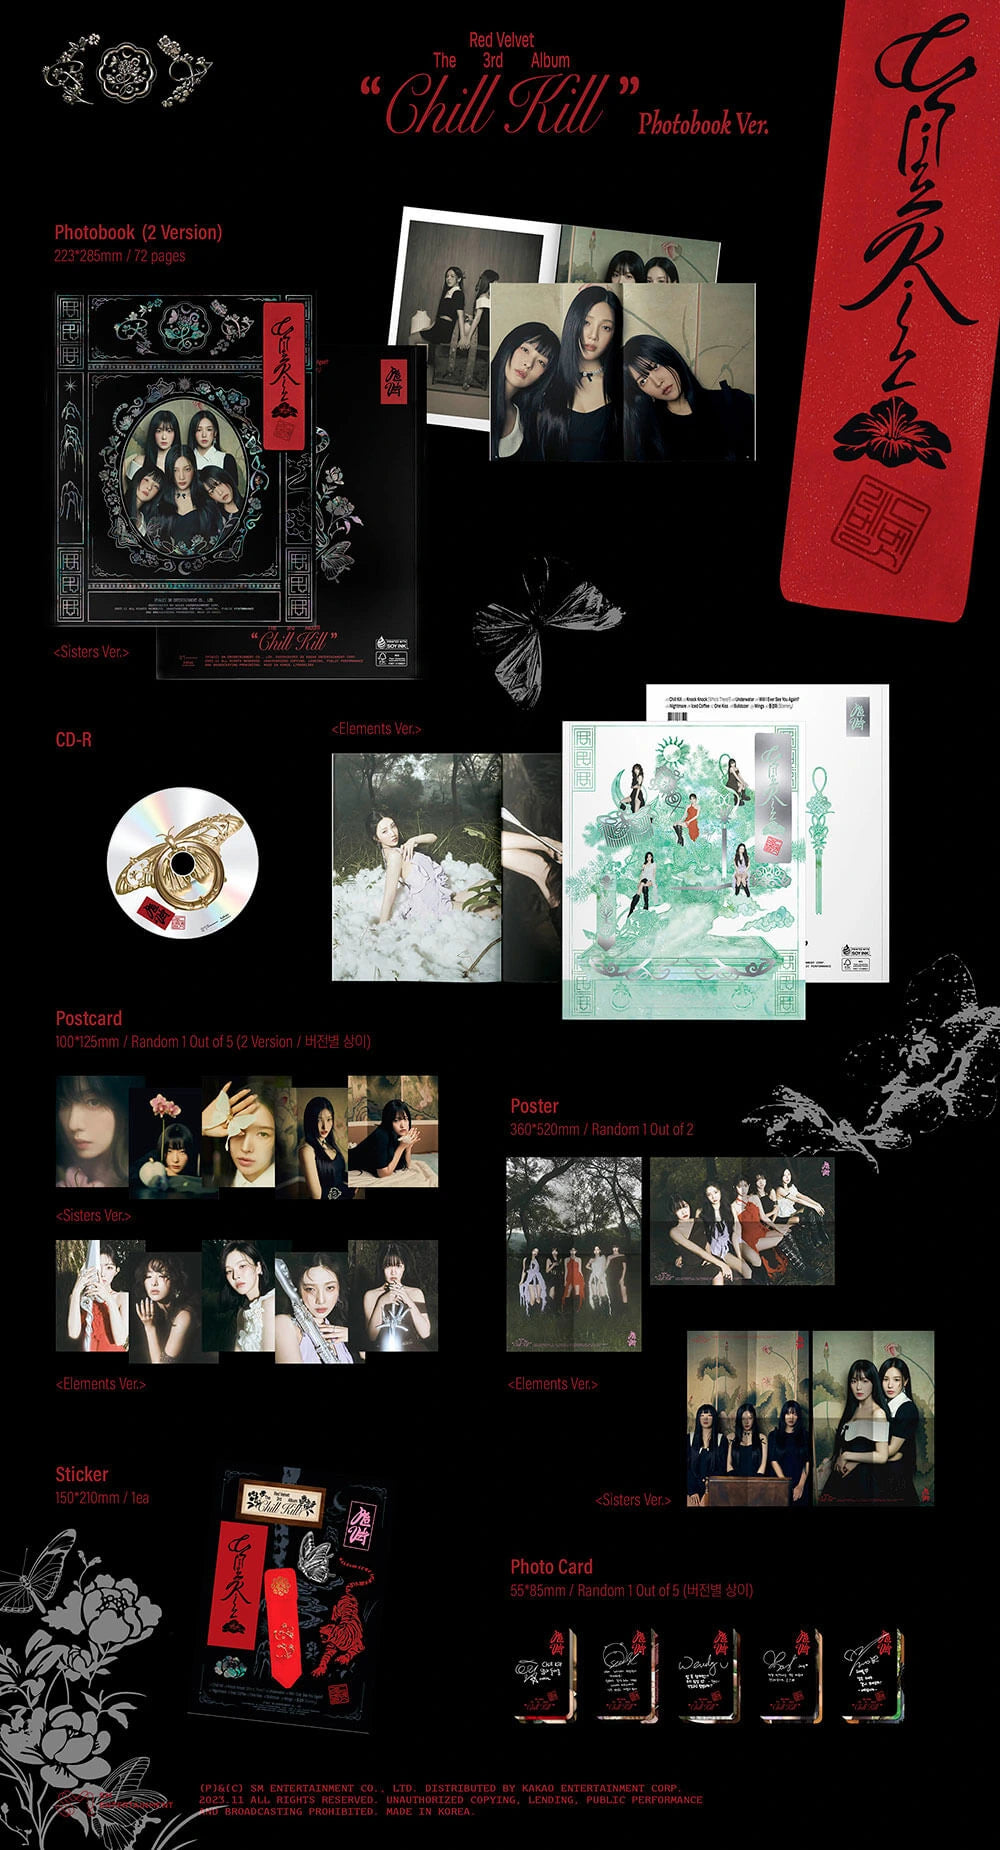 Red Velvet - Chill Kill (3rd Full-Length Album) 写真集 Ver.